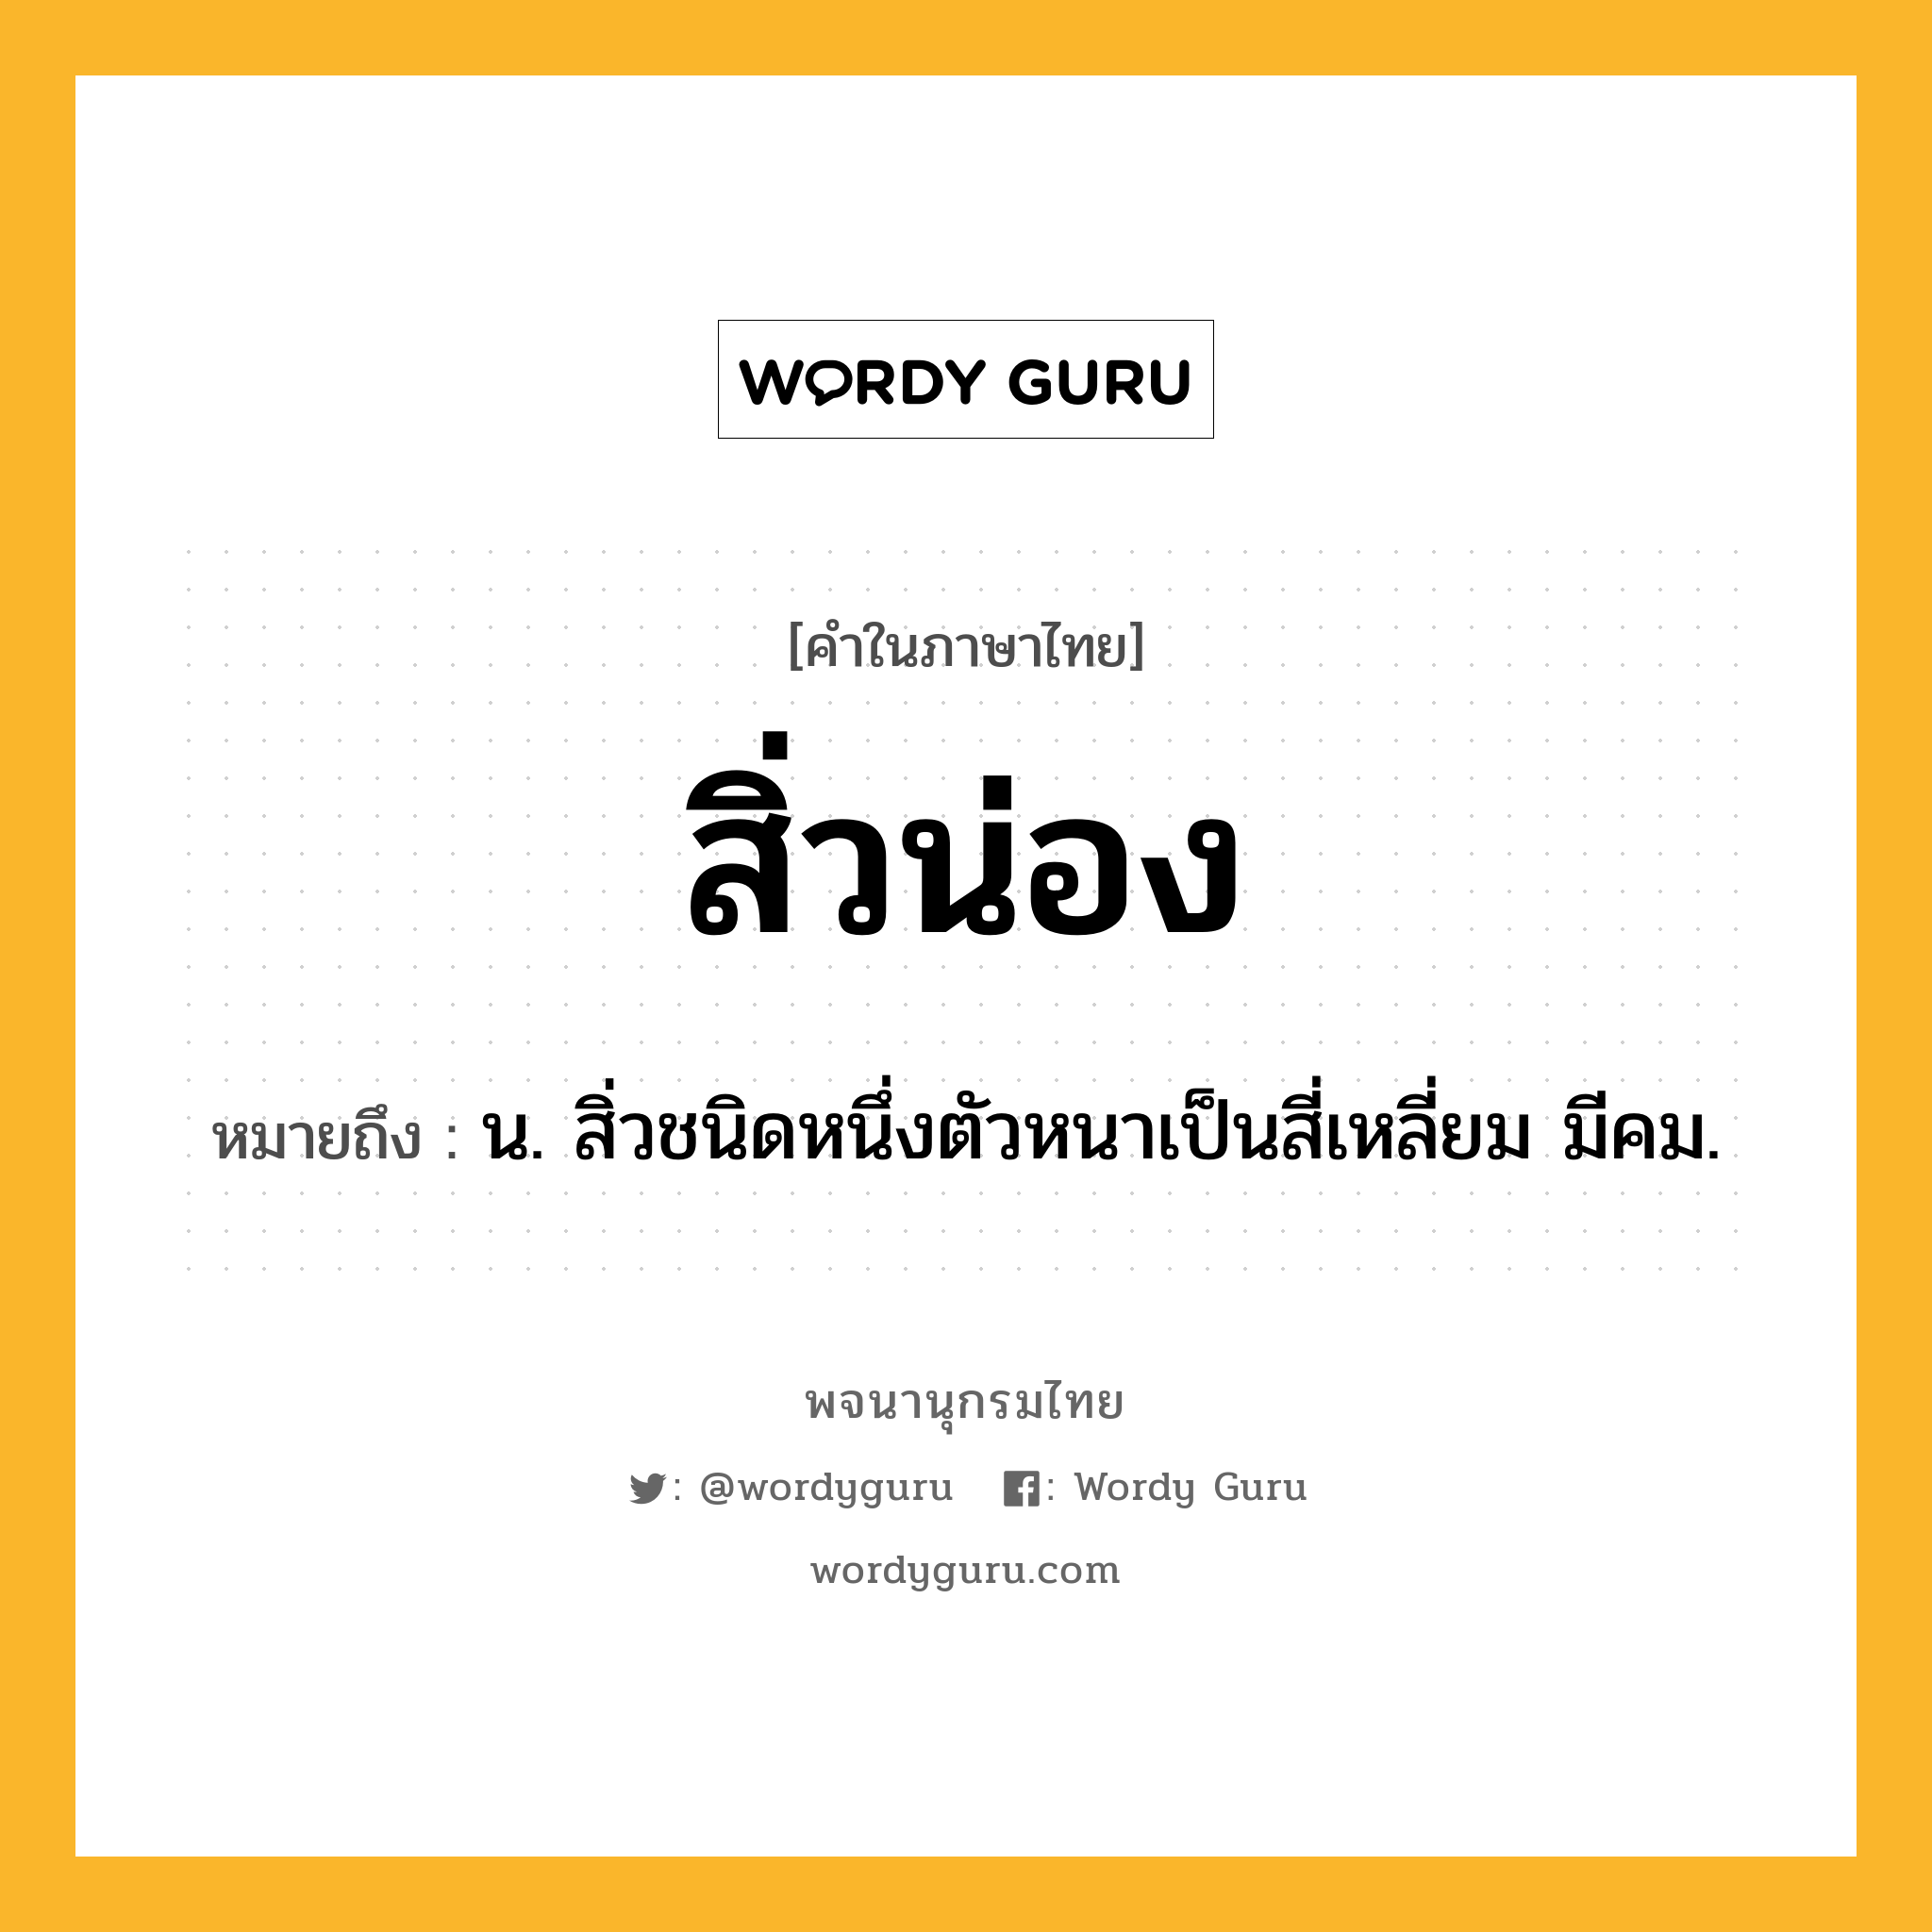 สิ่วน่อง หมายถึงอะไร?, คำในภาษาไทย สิ่วน่อง หมายถึง น. สิ่วชนิดหนึ่งตัวหนาเป็นสี่เหลี่ยม มีคม.